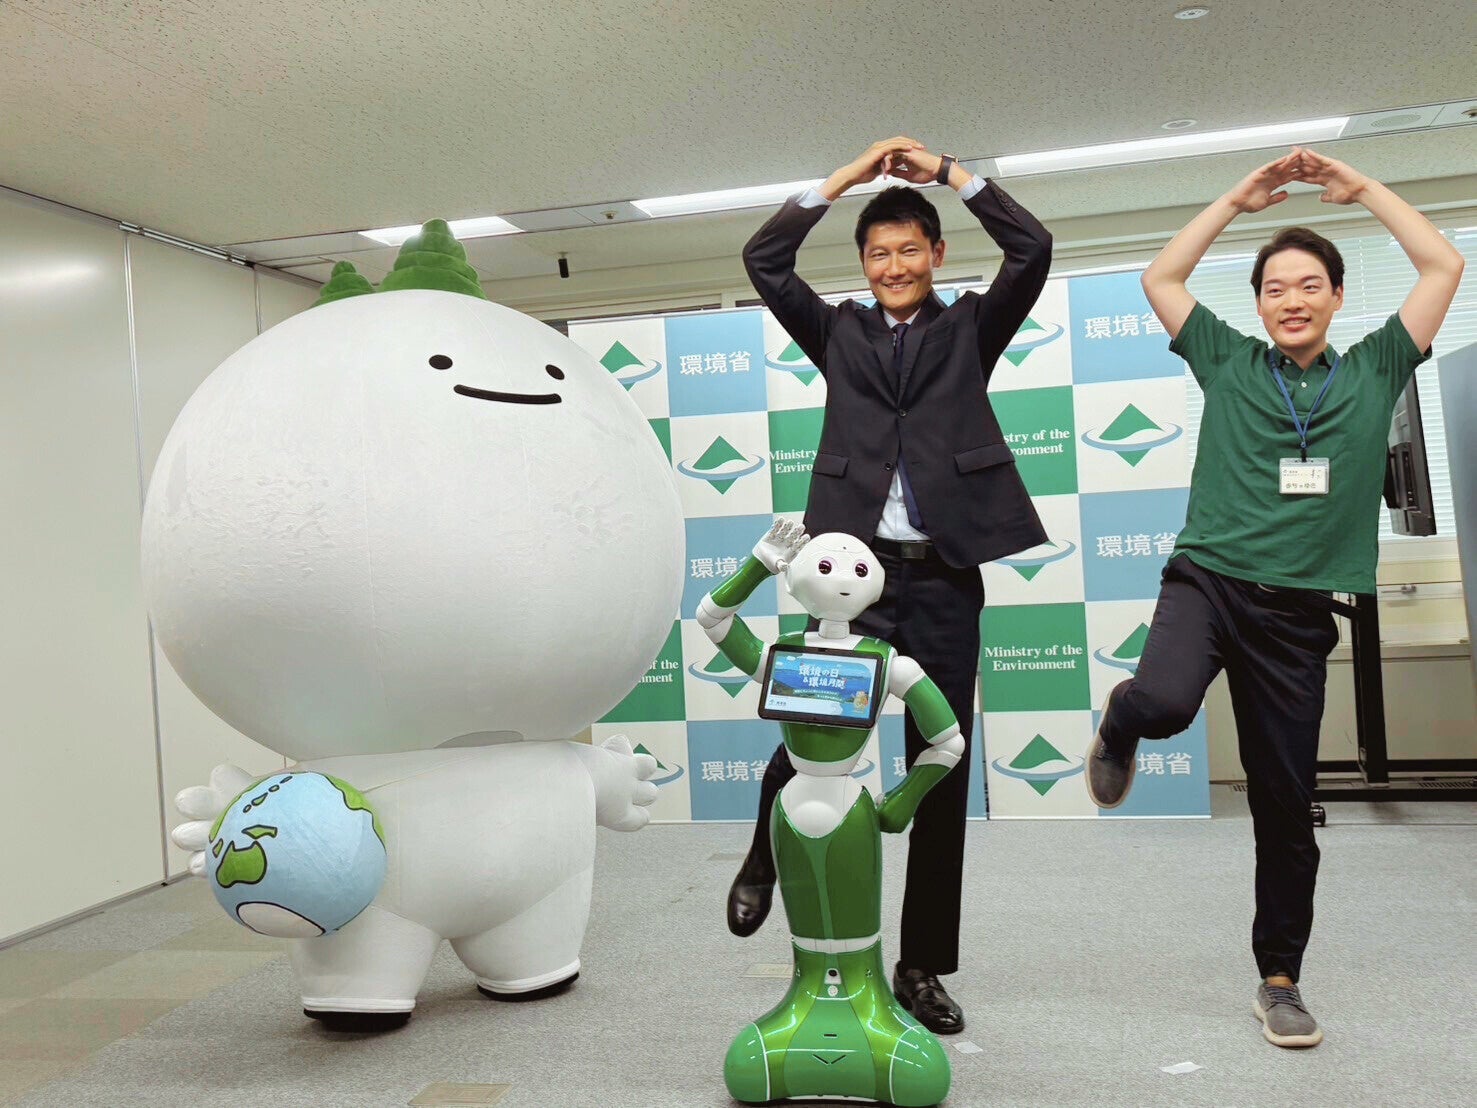 人型ロボット「Pepper」が朝日環境大臣政務官を表敬訪問